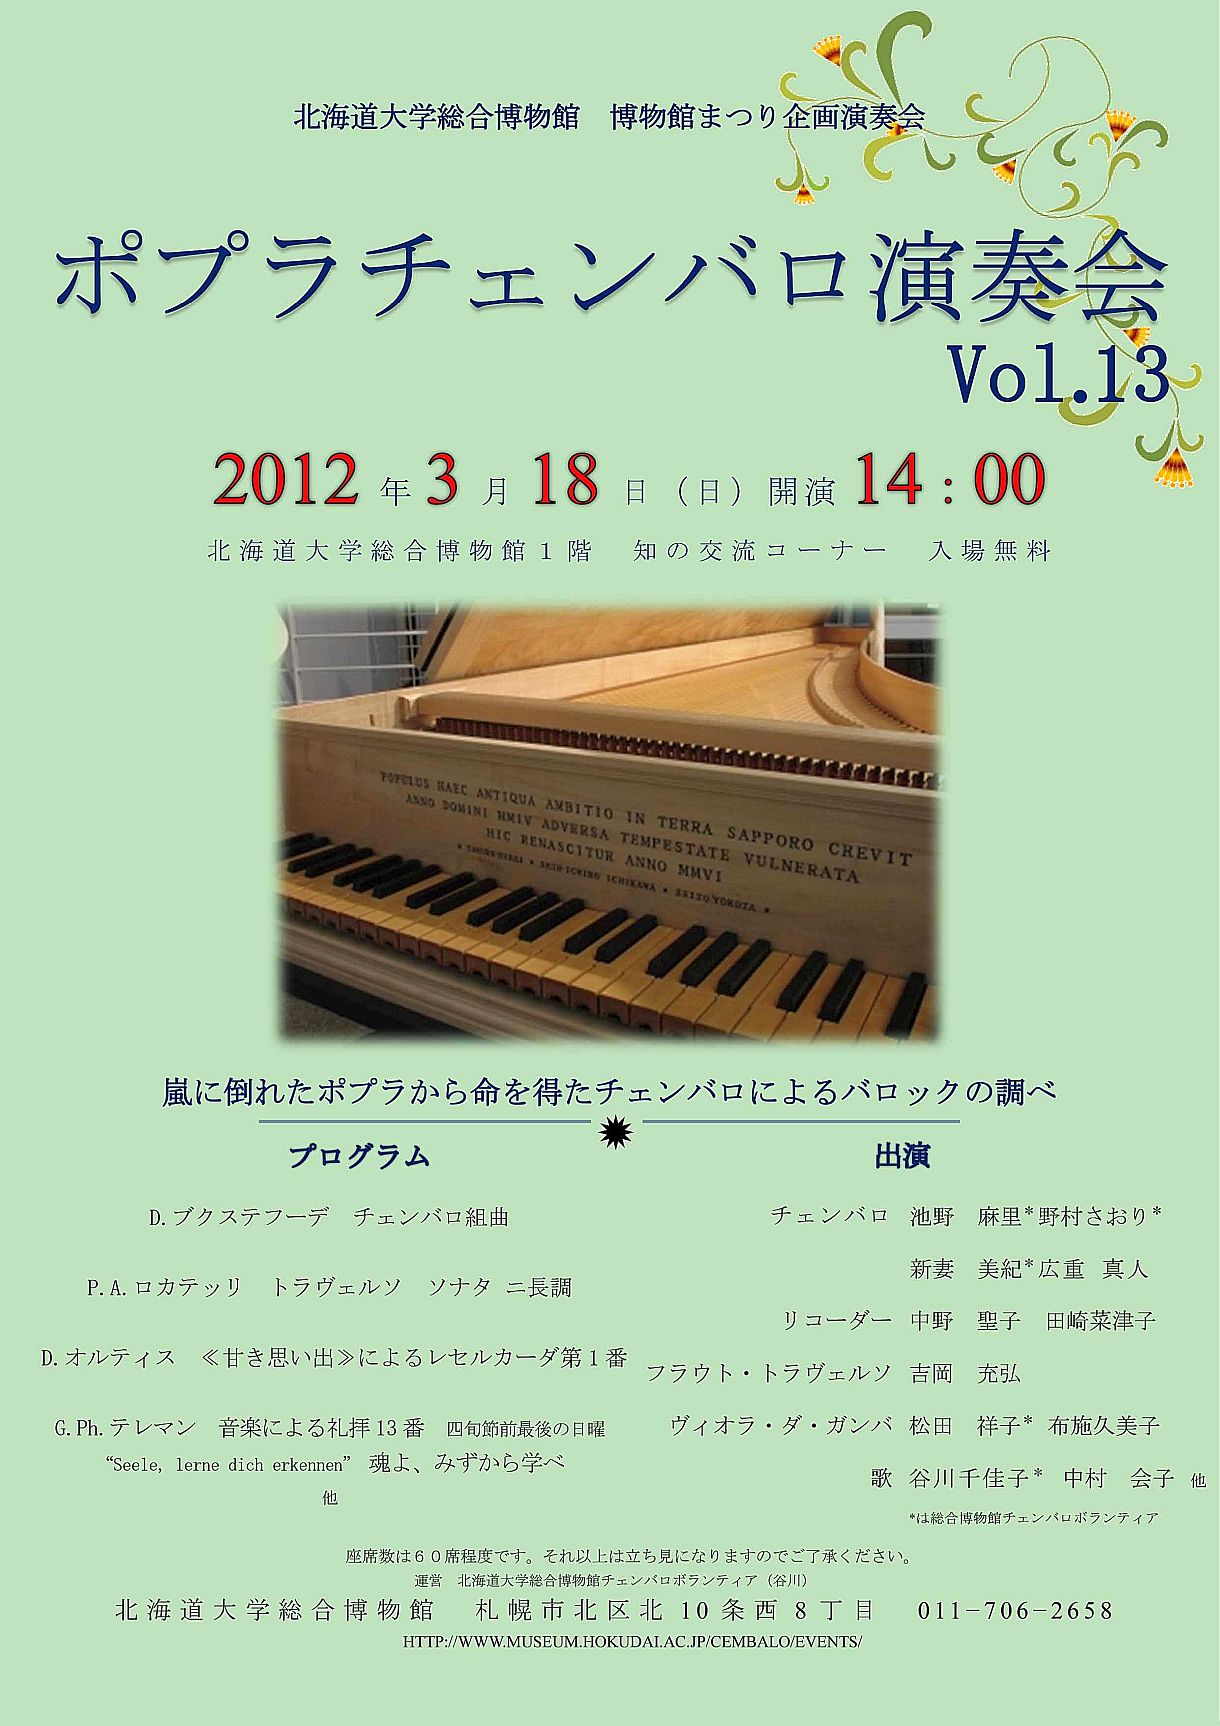 【3月18日、3月25日 開催】 ポプラチェンバロ演奏会 Vol.13、Vol.14 が開催されます